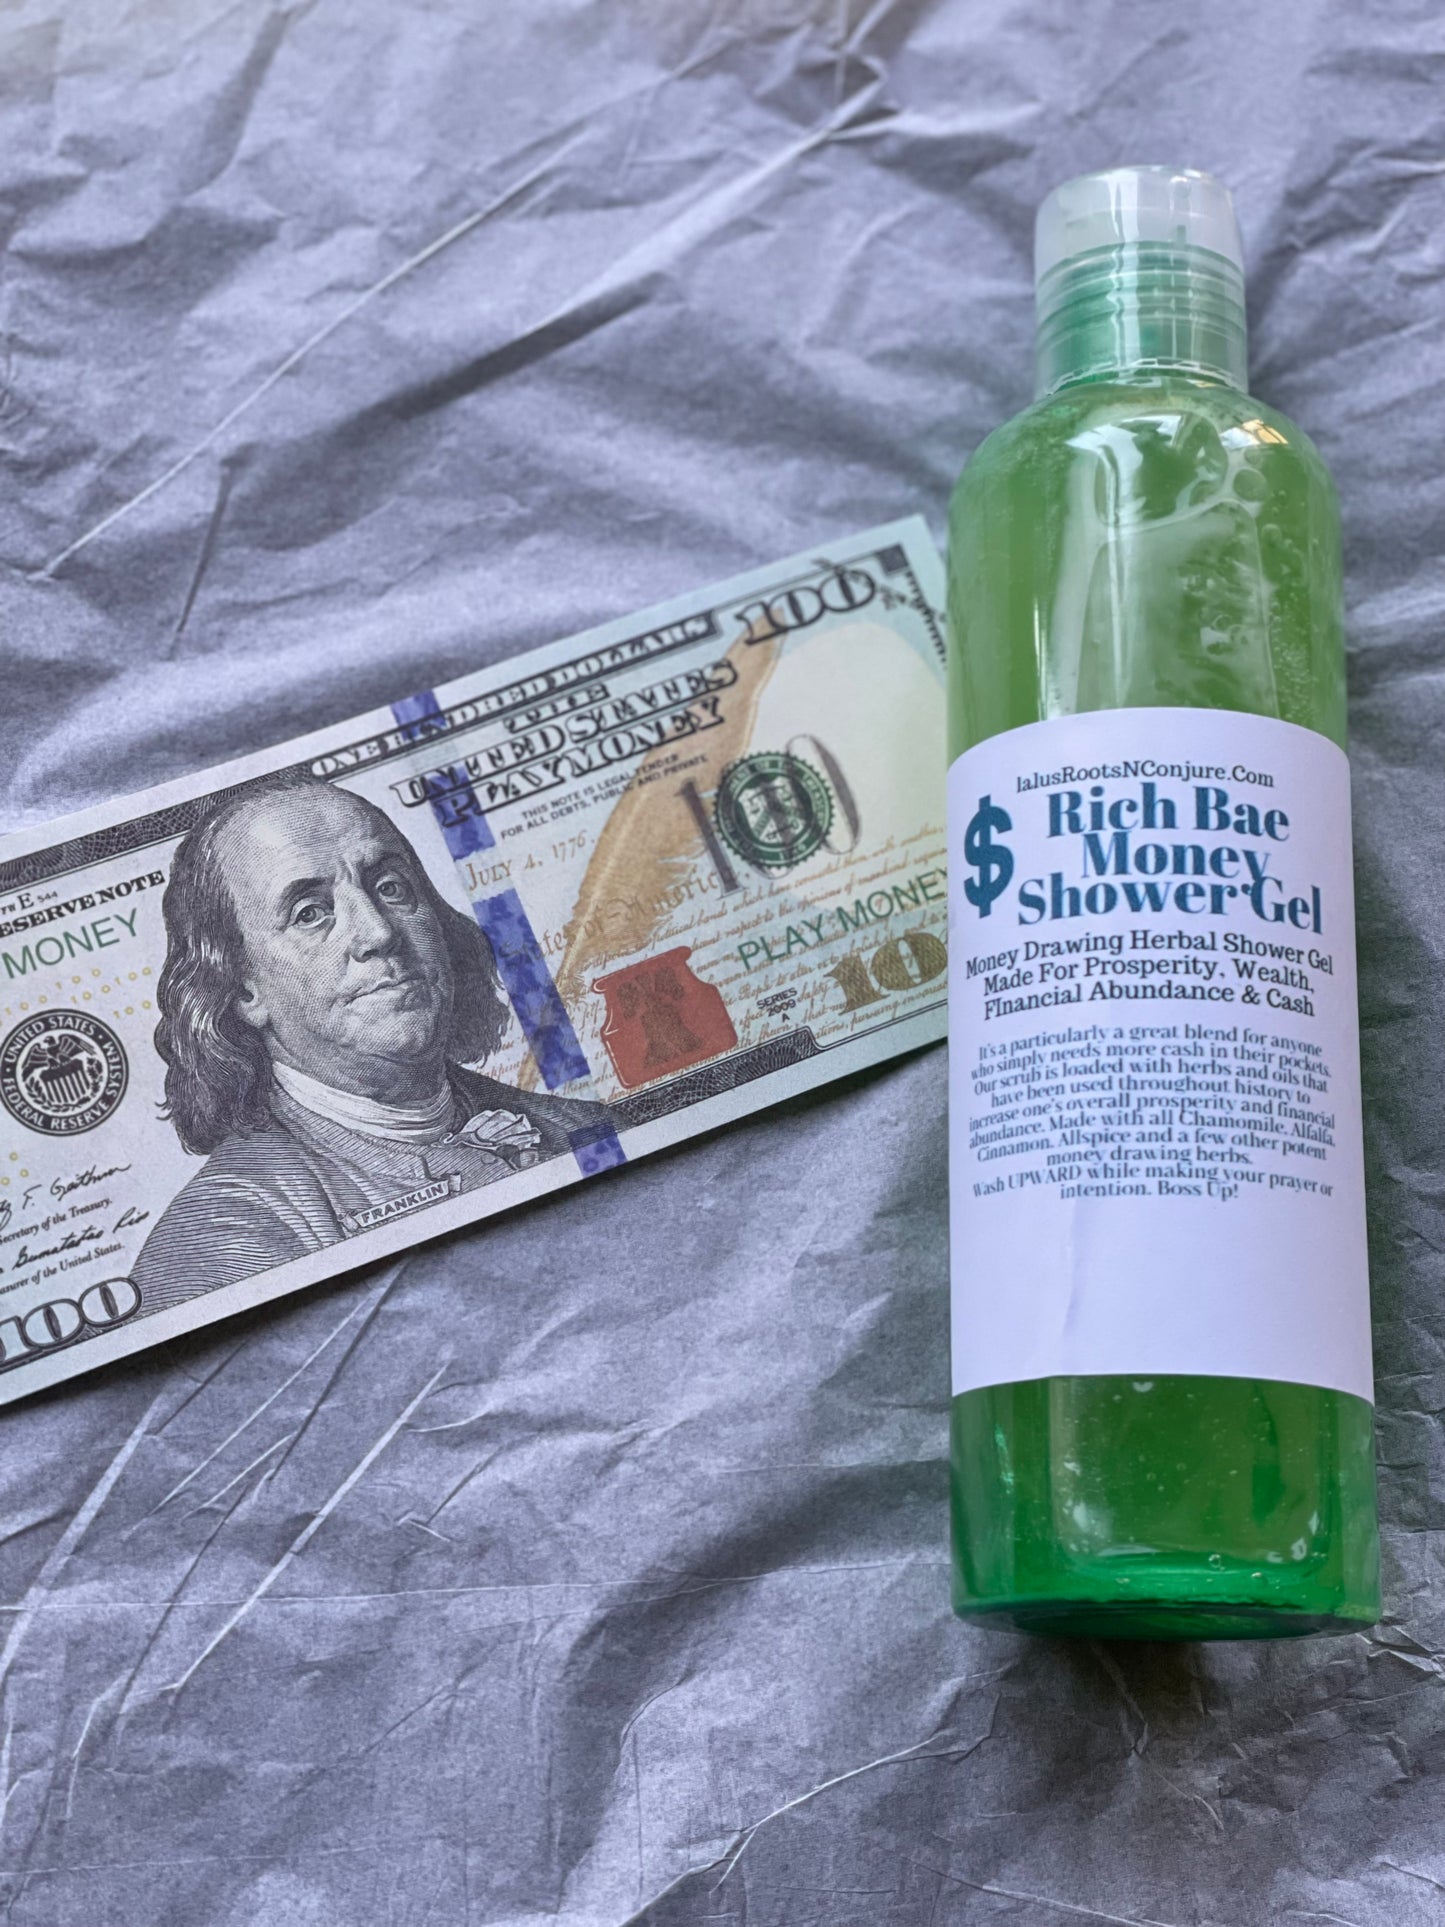 Rich Bae Shower Gel for Prosperity